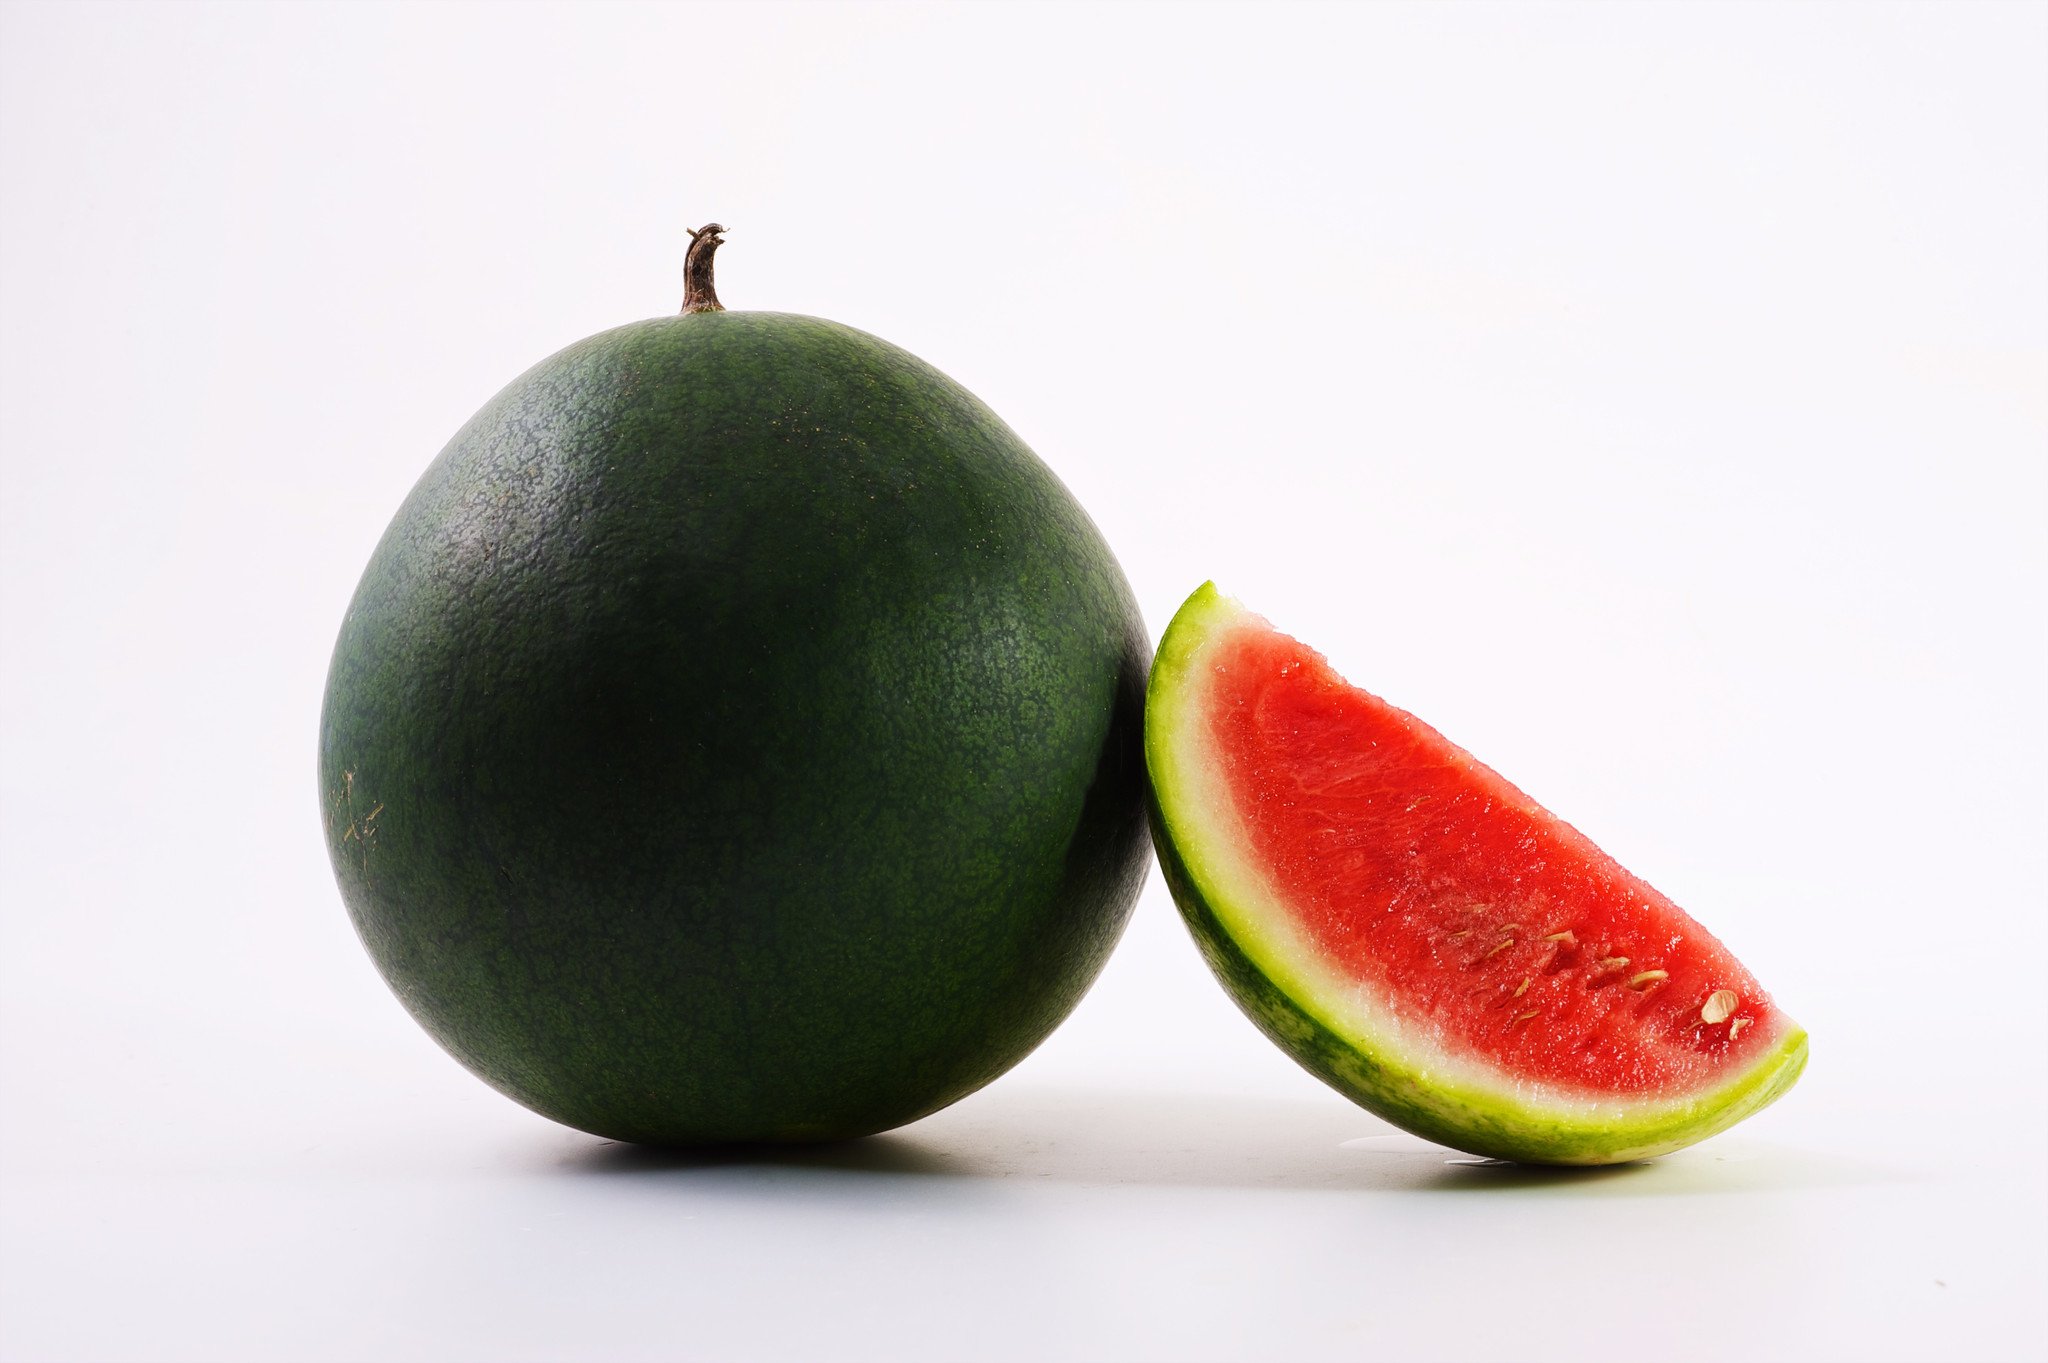 Watermelon - Round Black Seeds